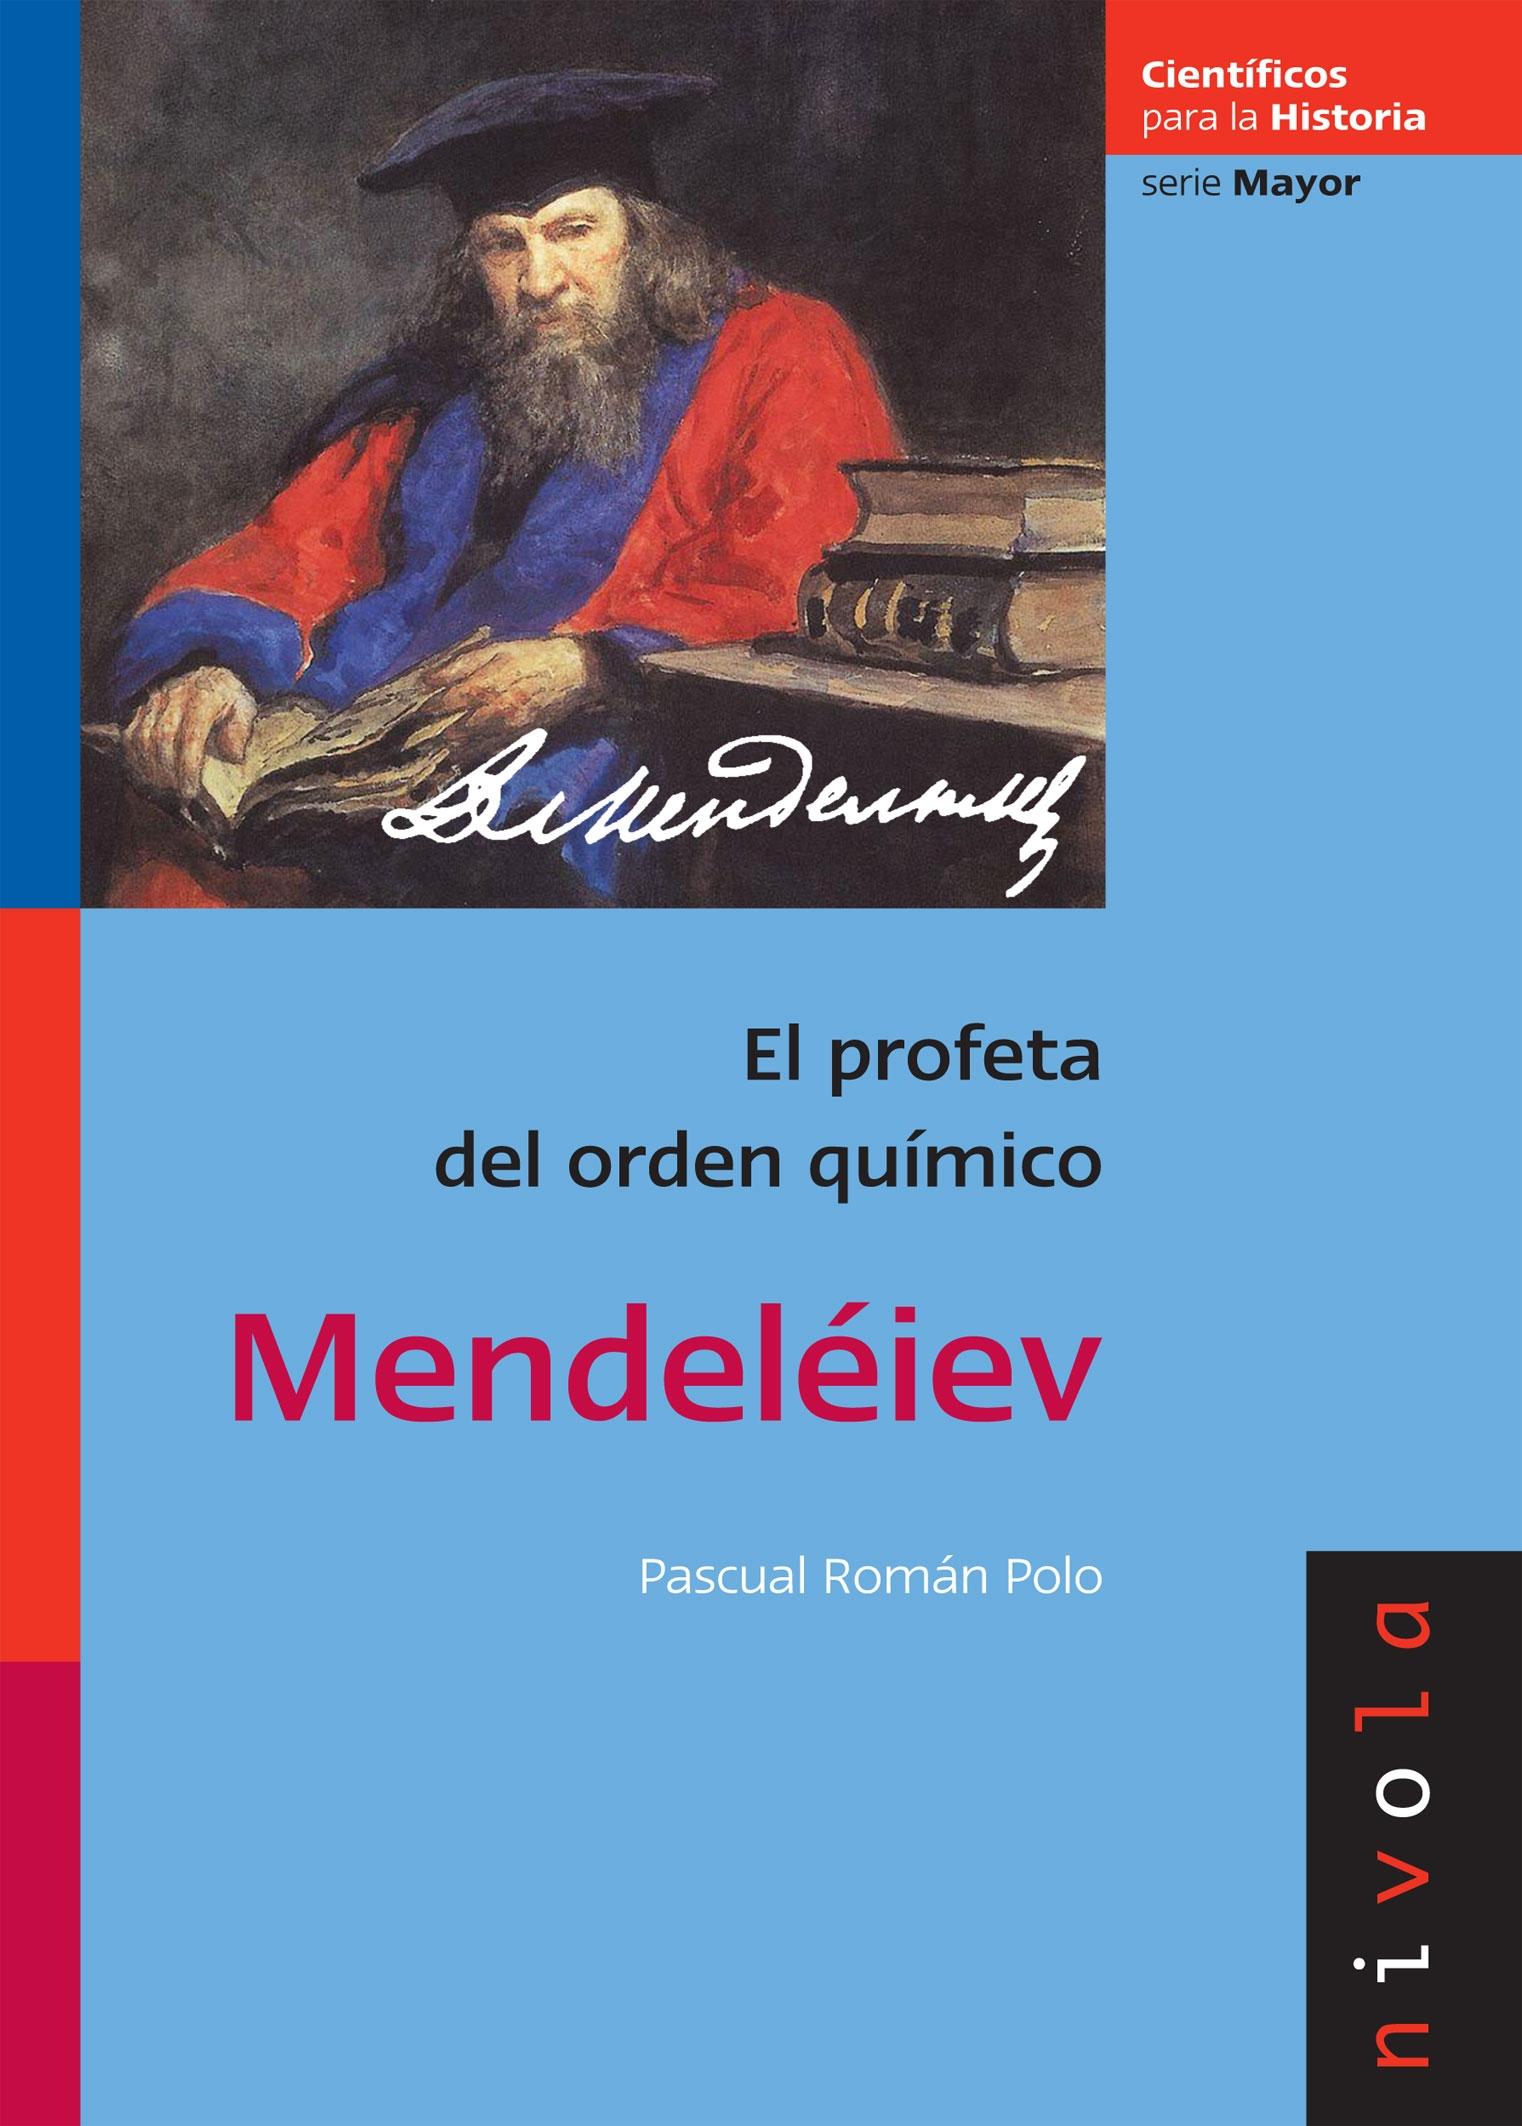 Mendeléiev "El profeta del orden químico". 